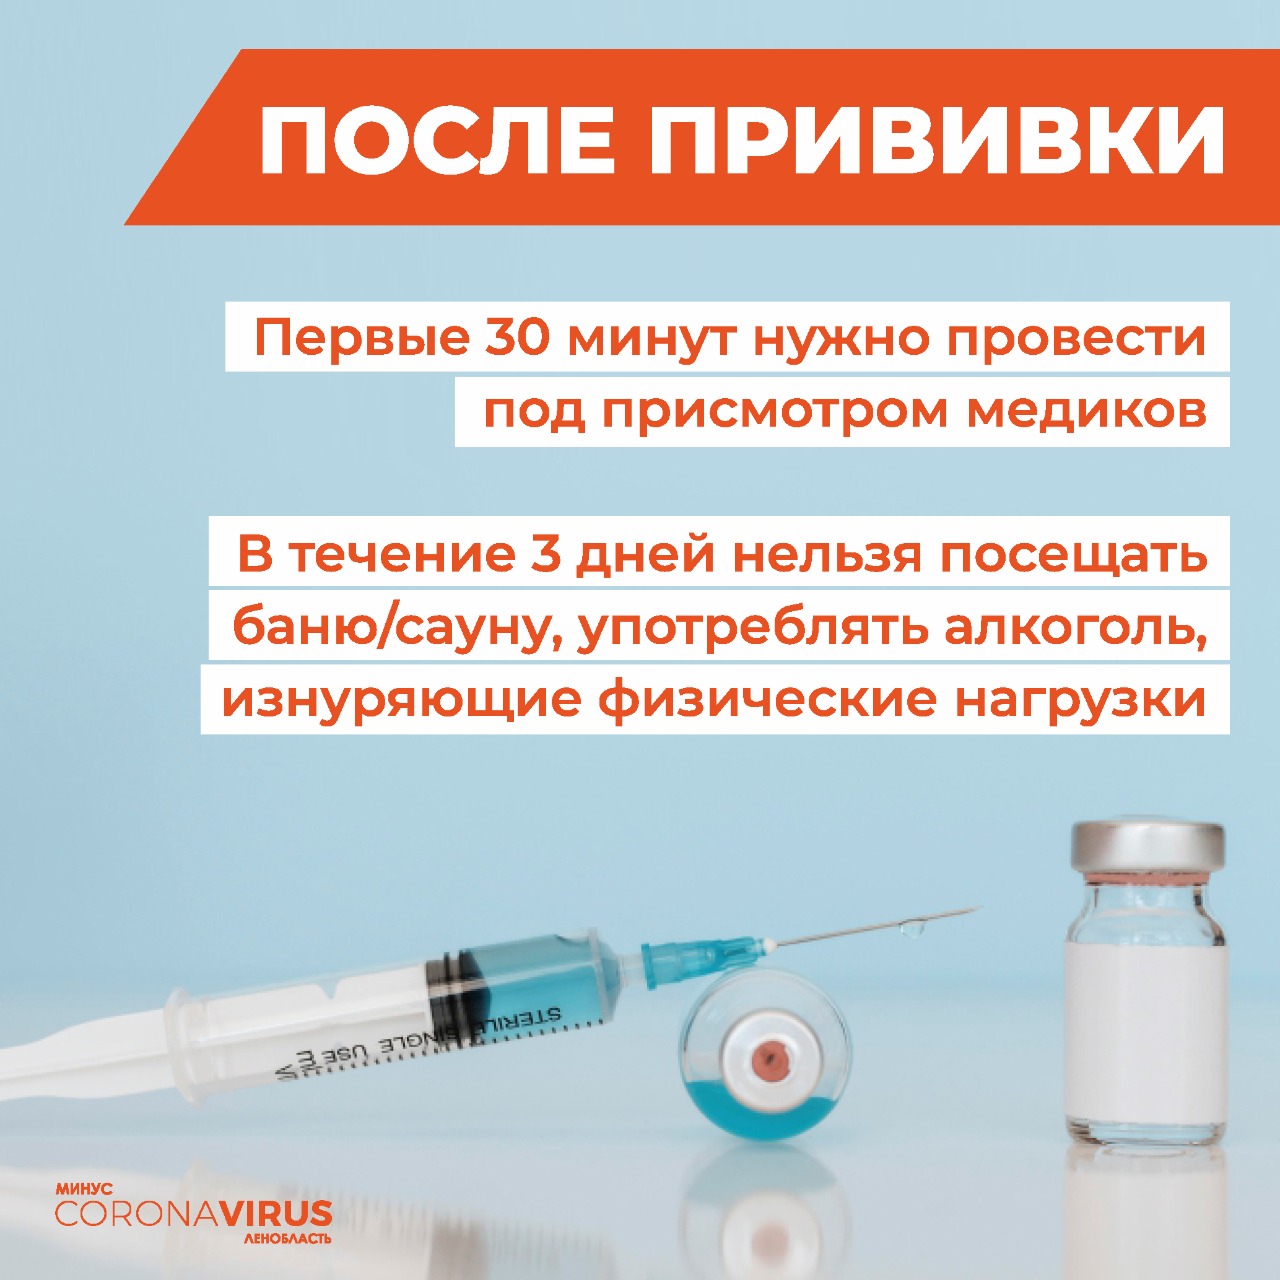 Имеют ли право родители отказаться делать прививки ребенку?. испания по-русски - все о жизни в испании